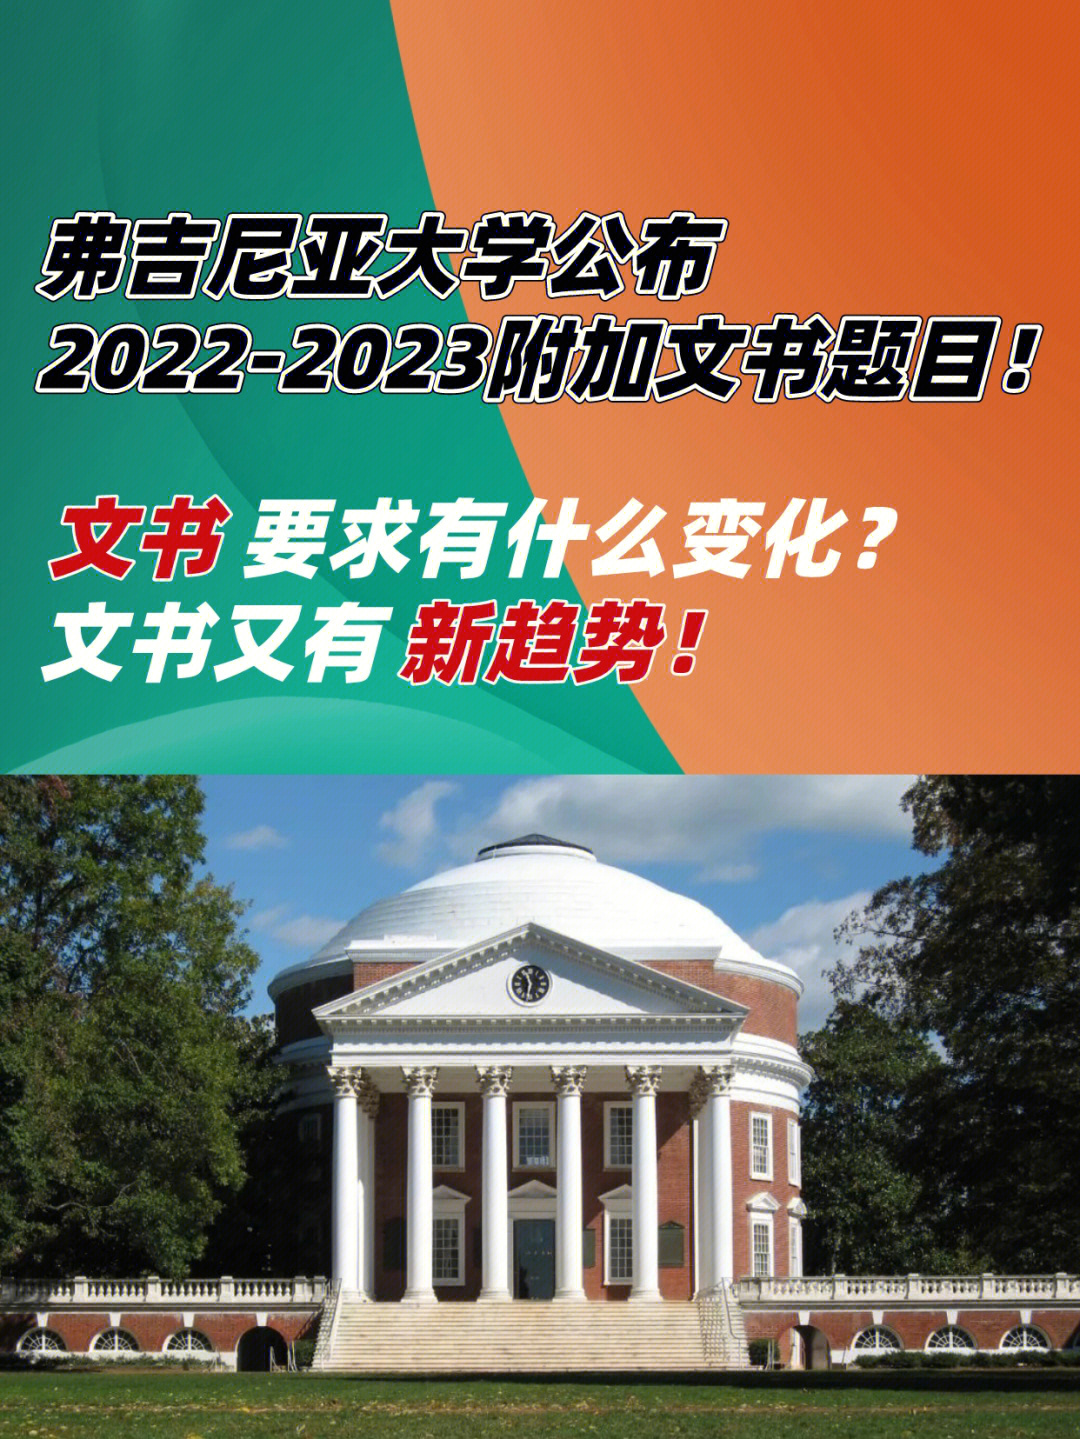 弗吉尼亚大学2023文书有什么新变化7571